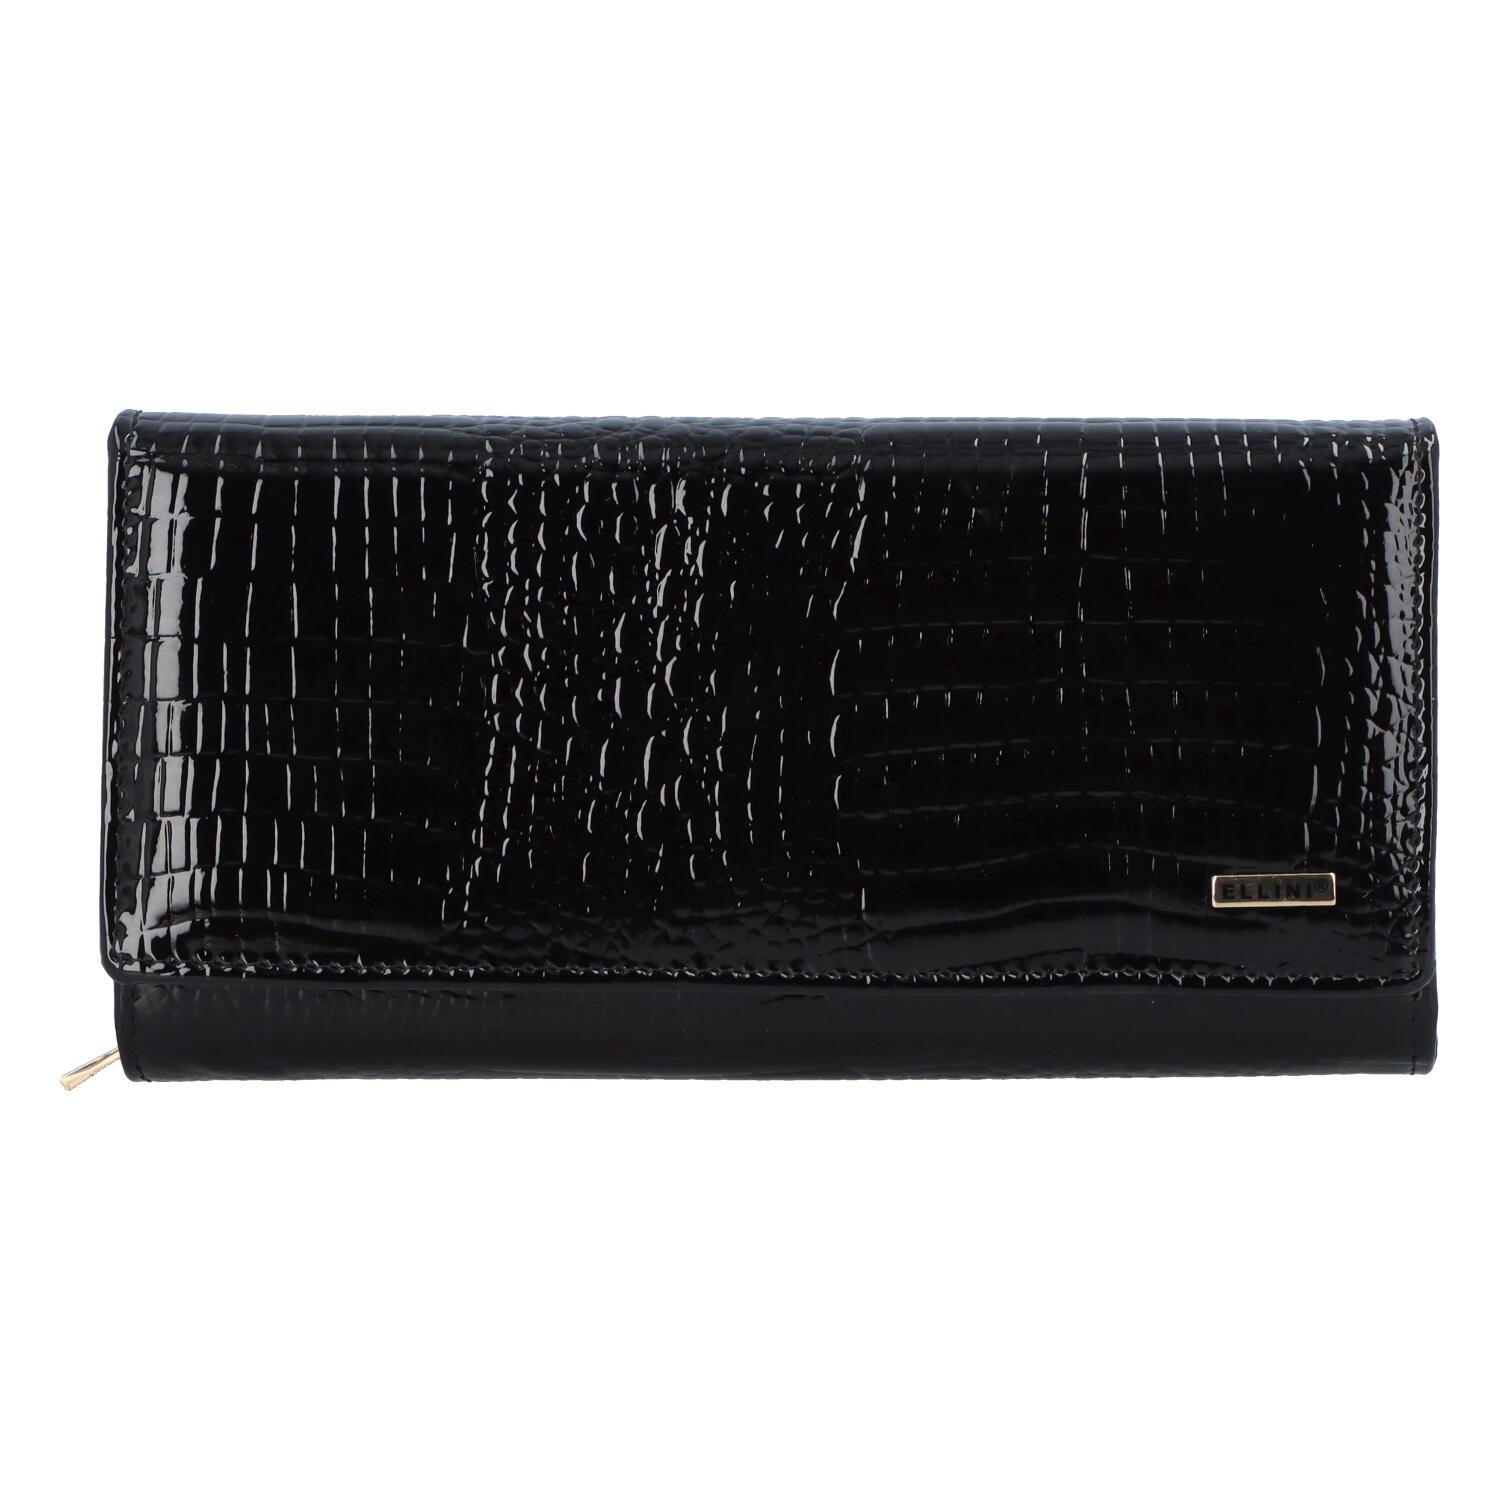 Luxusní dámská kožená peněženka černá - Ellini Ferity